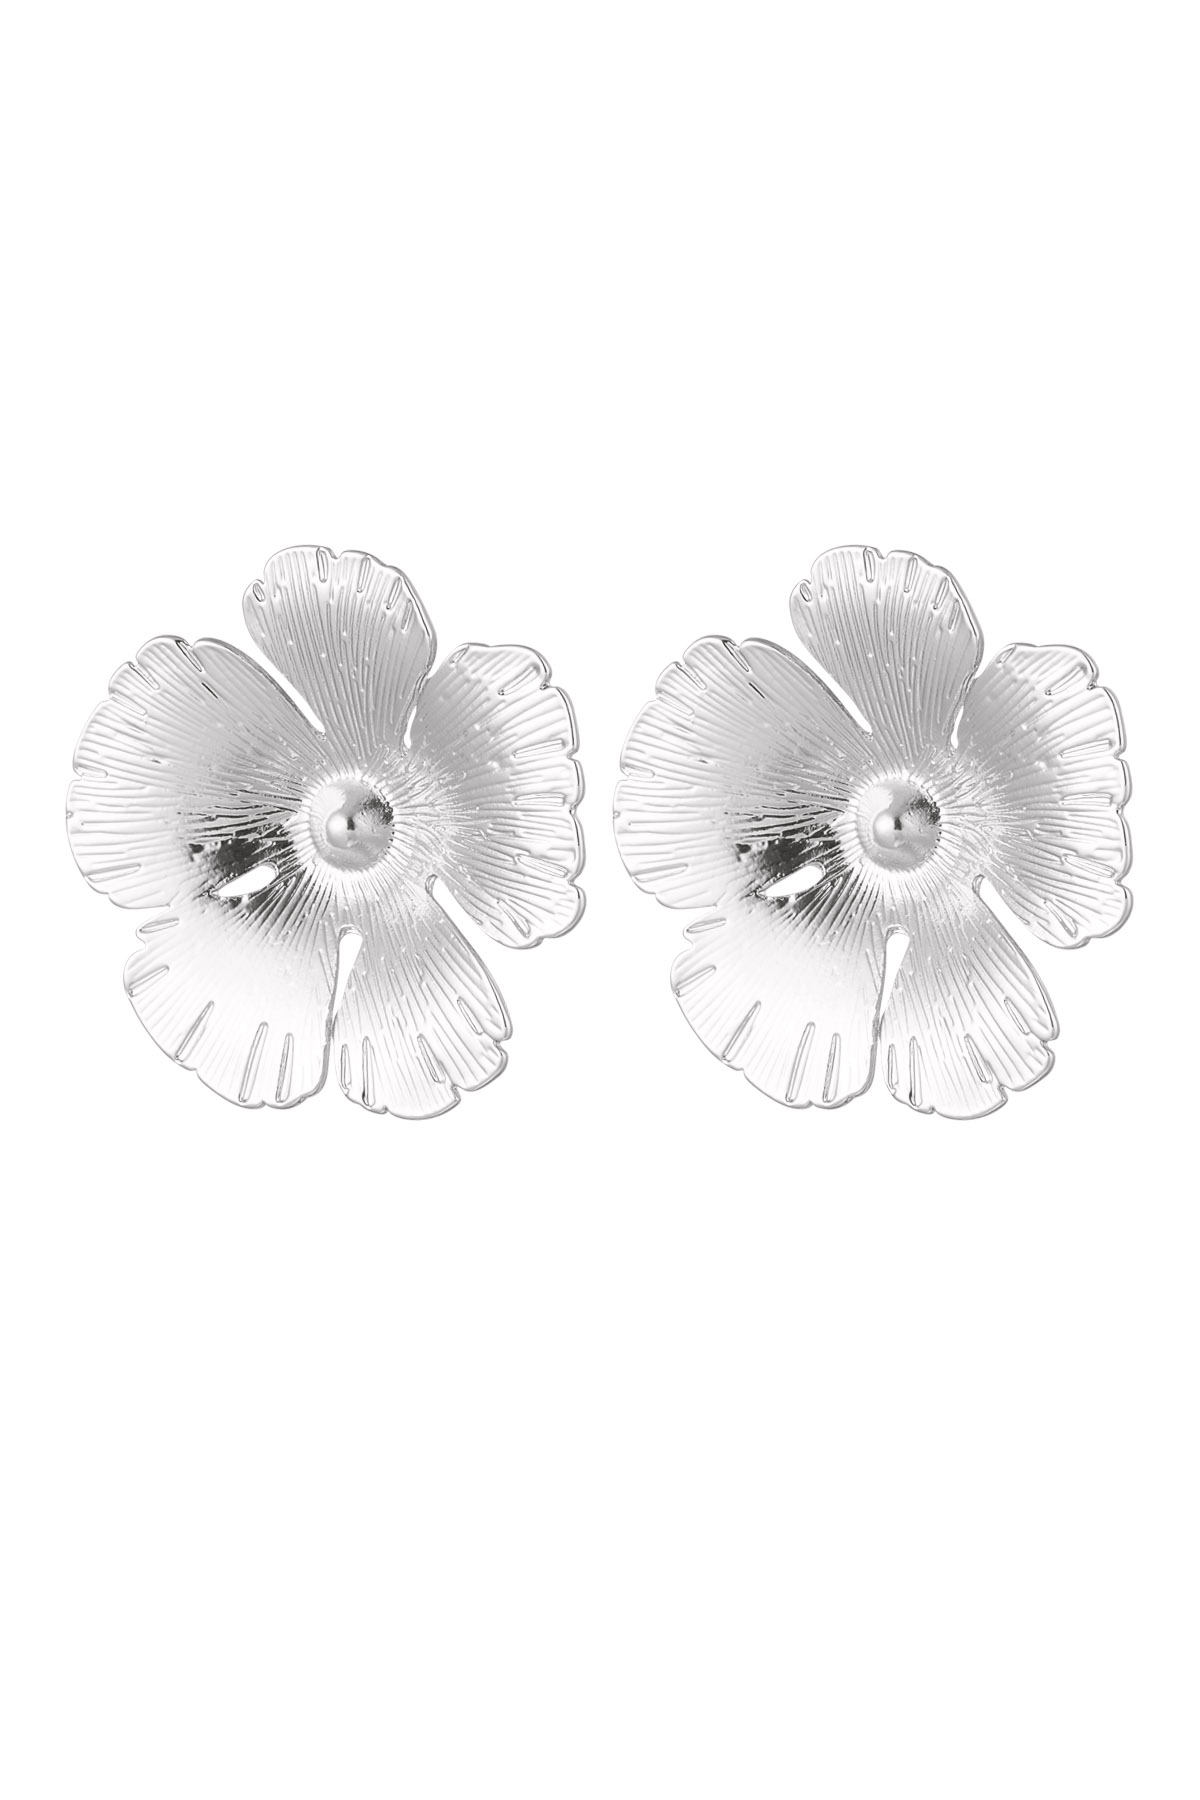 Flower stud earrings - silver Alloy h5 